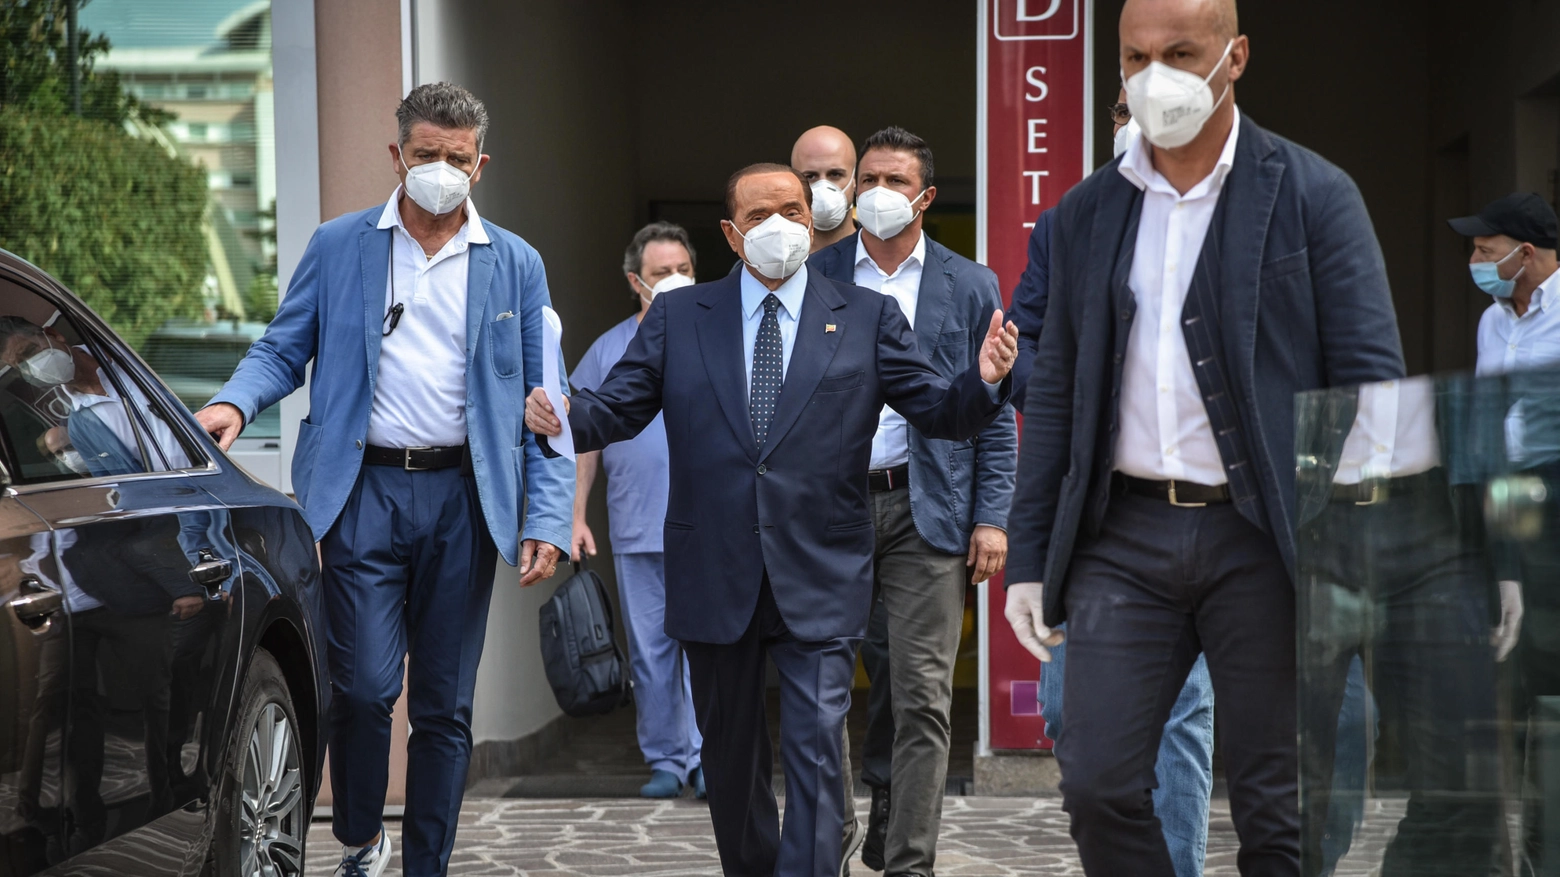 Berlusconi lascia il San Raffaele